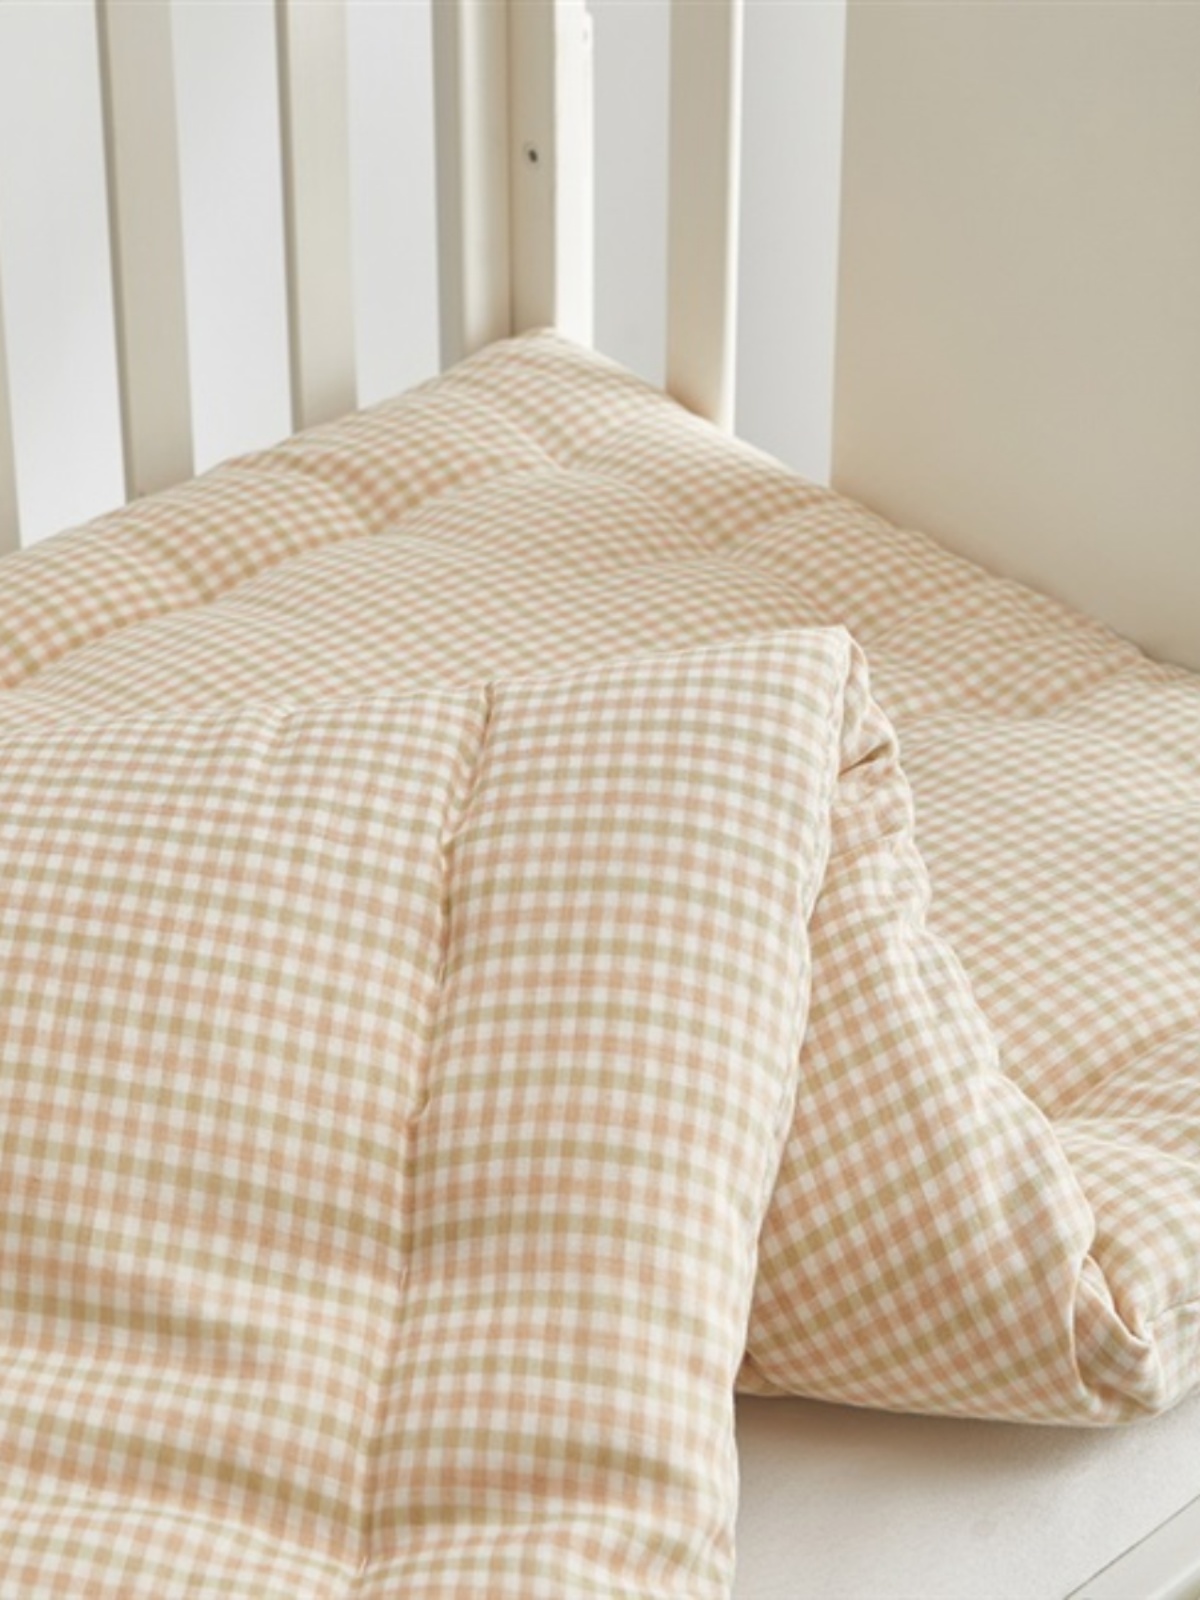 品幼儿园垫芯婴儿床彩棉褥子儿童棉花床褥子垫被宝宝褥垫可定做促